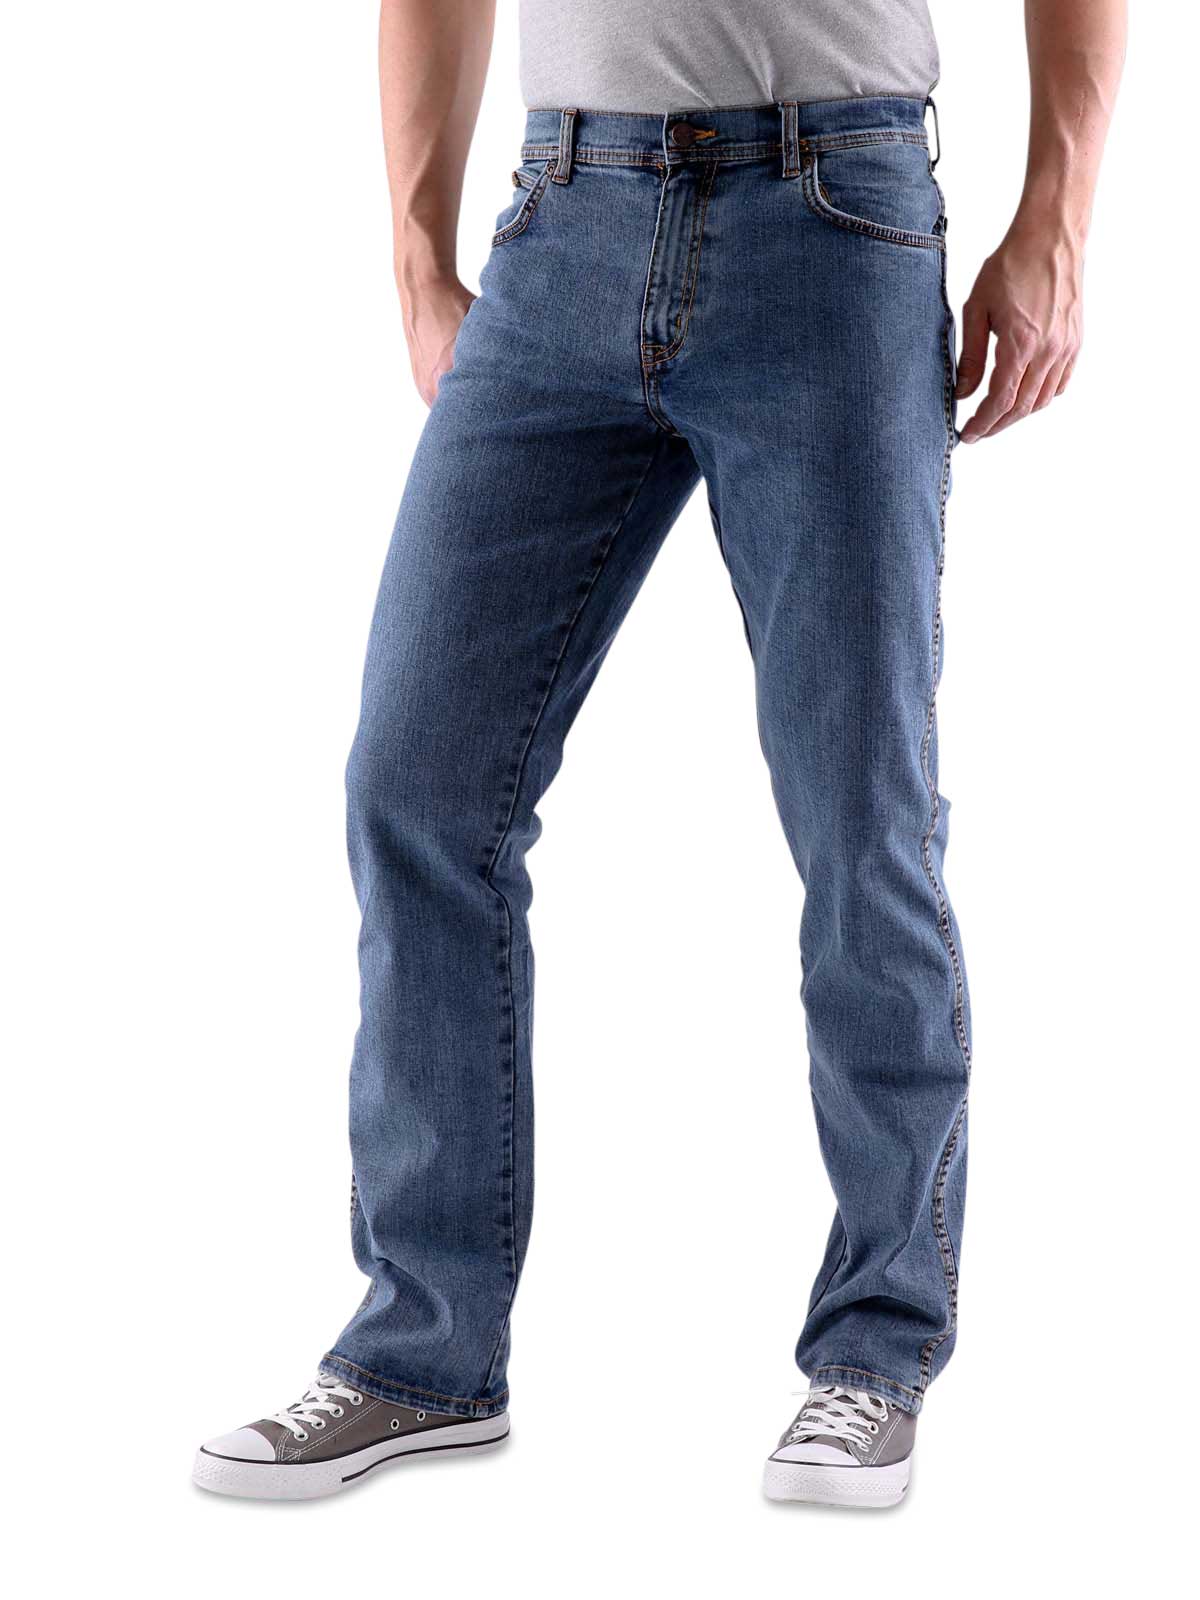 wrangler texas stonewash jeans